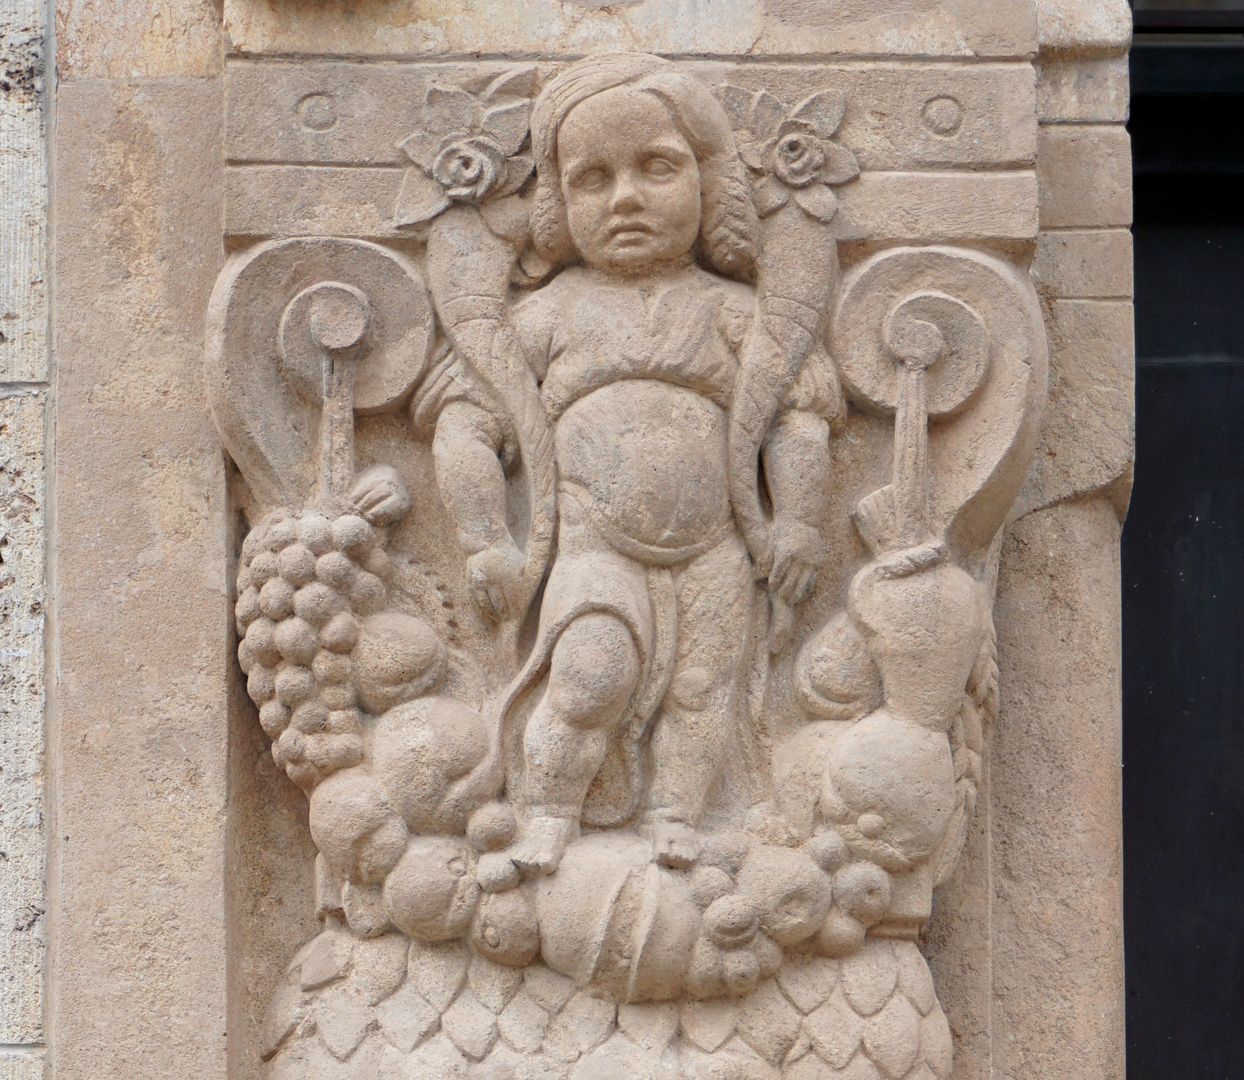 Portal linke Portallaibung, Detail mit Kind, welches auf einem Fruchtgehänge steht und zwei Füllhörner trägt (Hinweis auf Abundantia?)